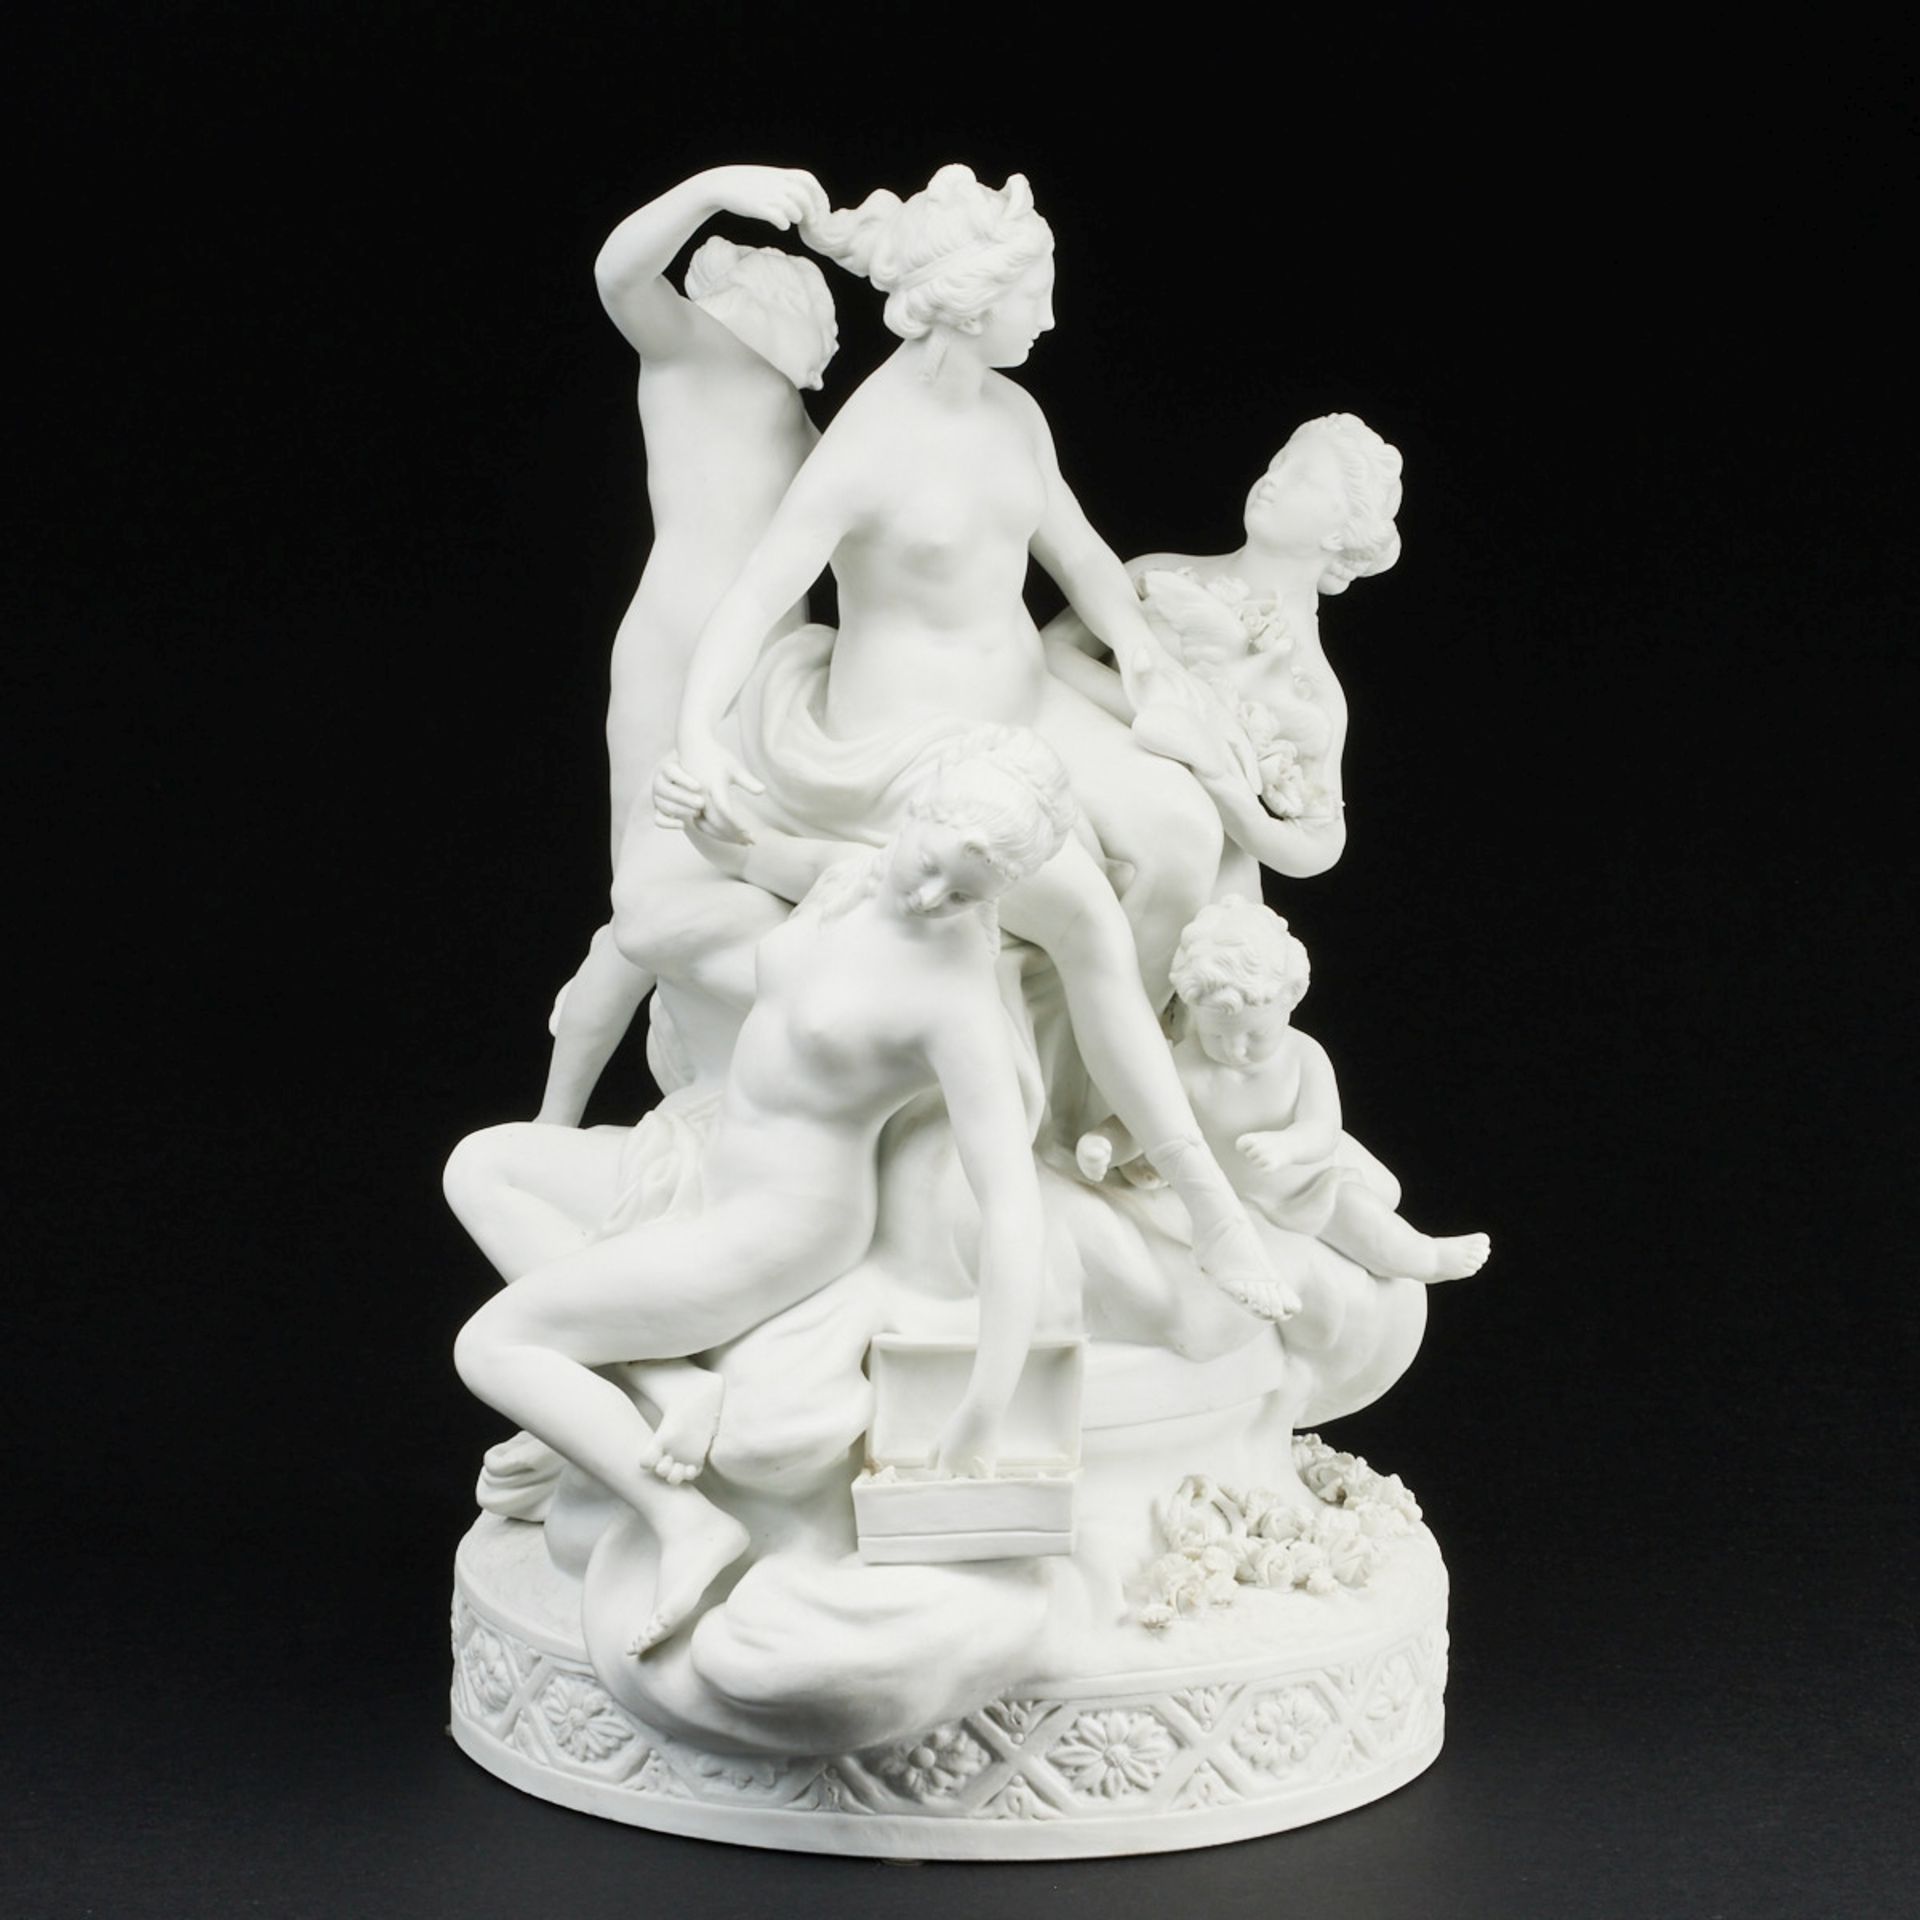 Figurengruppe Toilette der Venus / La Toilette de Venus. Manufacture Nationale de Porcelaine, Sèvres